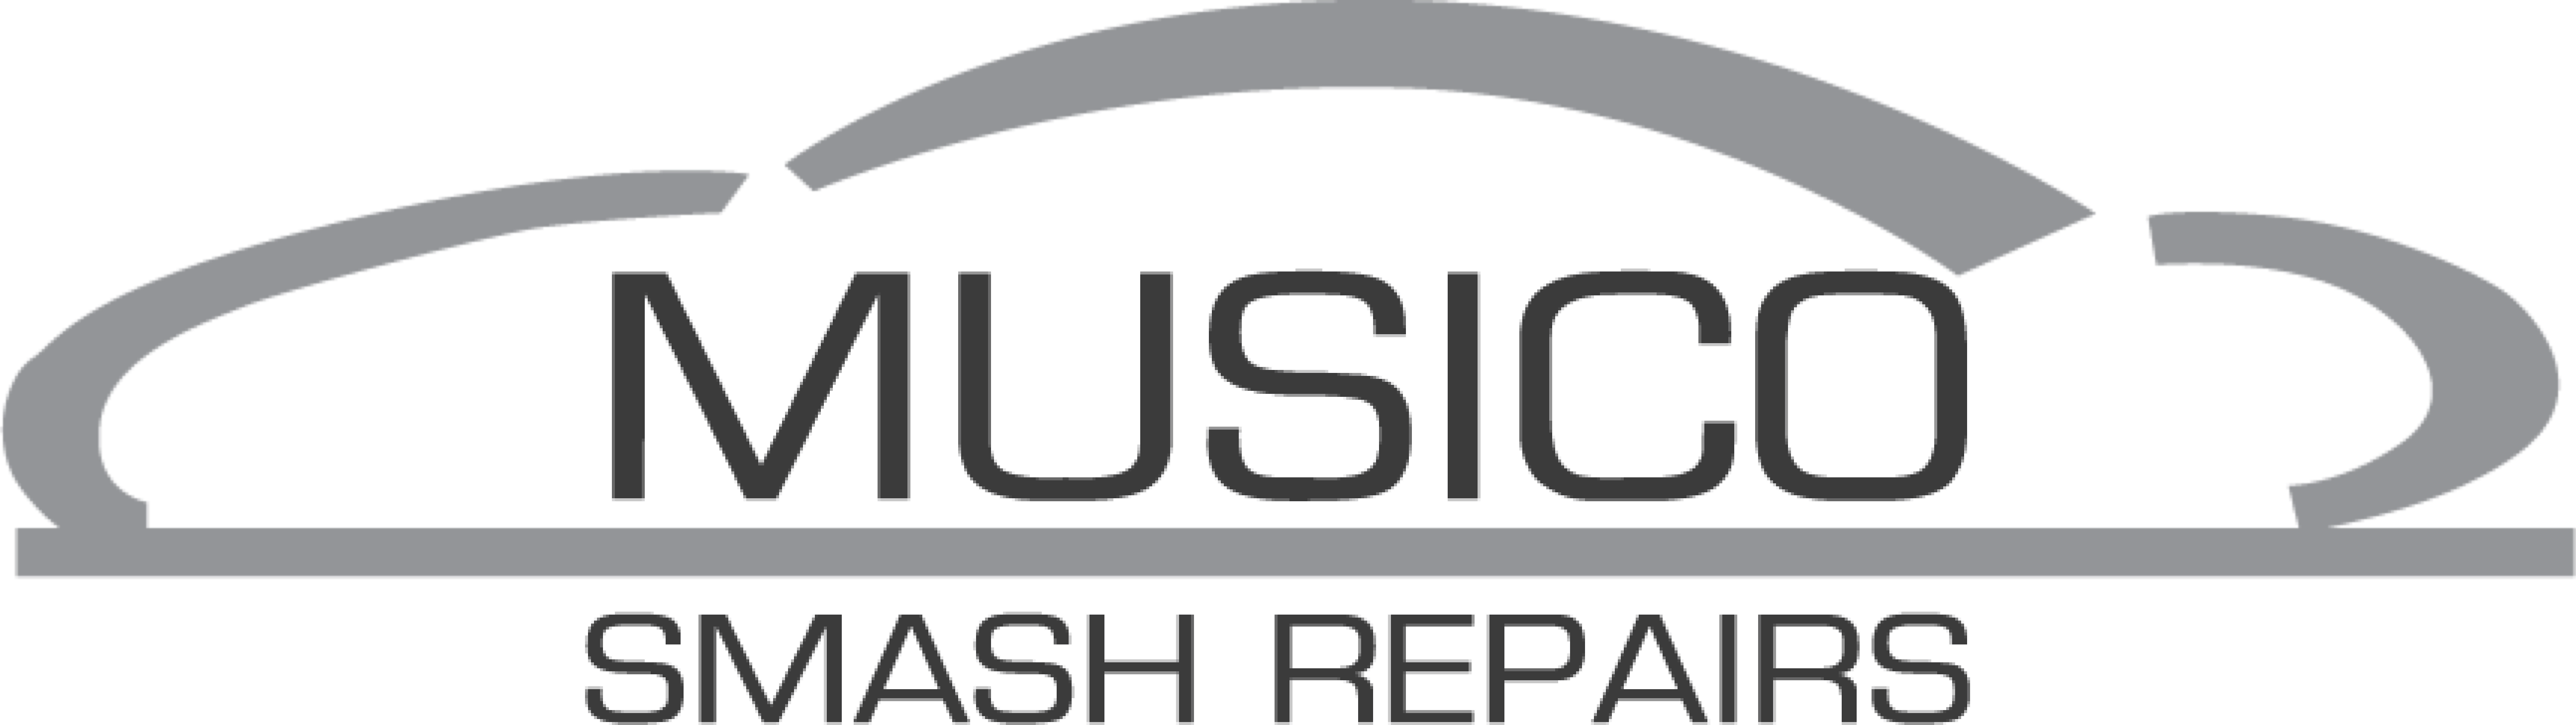 Musico Smash Repairs